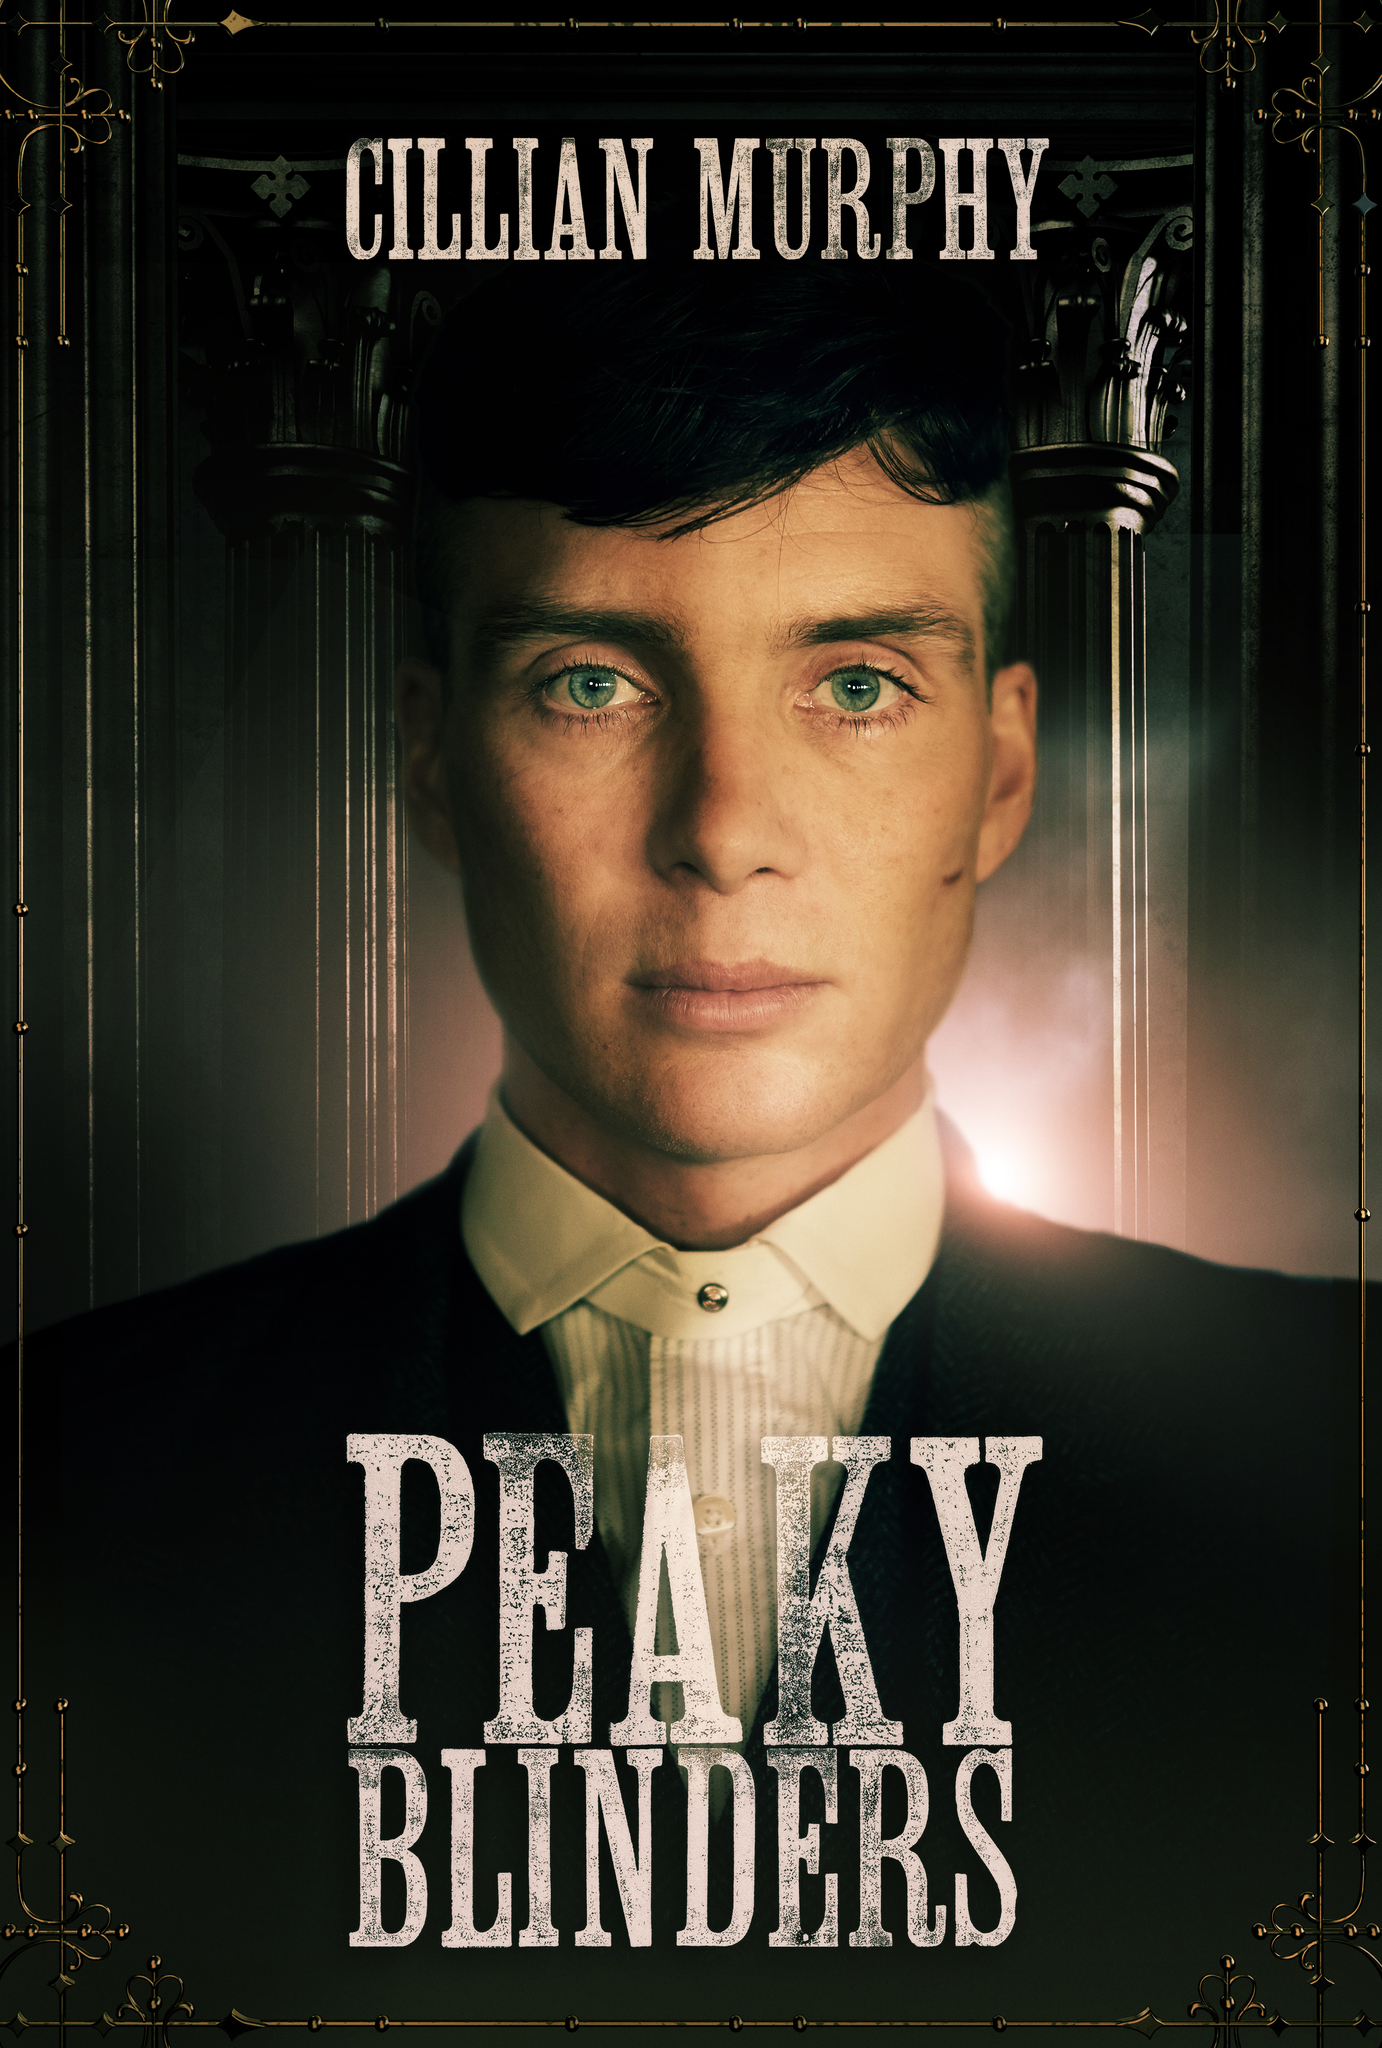 secretly Incentive Cruel Peaky Blinders - Peaky Blinders (2014) - Film serial - CineMagia.ro